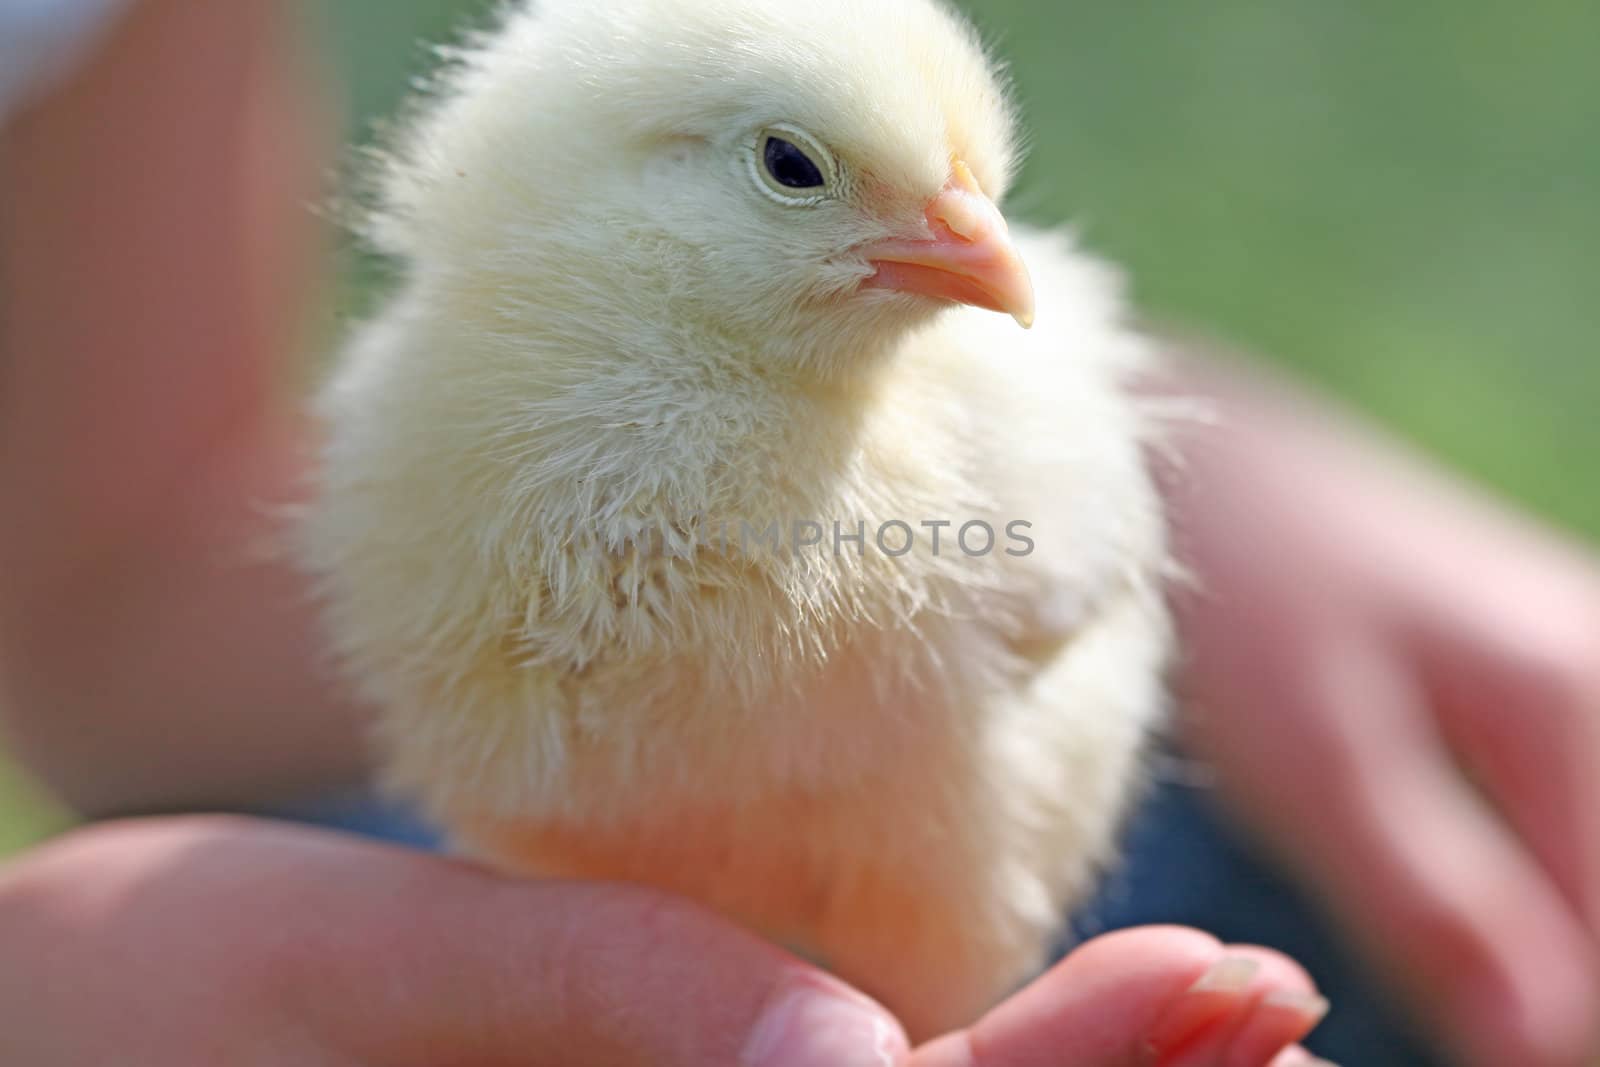 Baby chick in child's hand by jarenwicklund